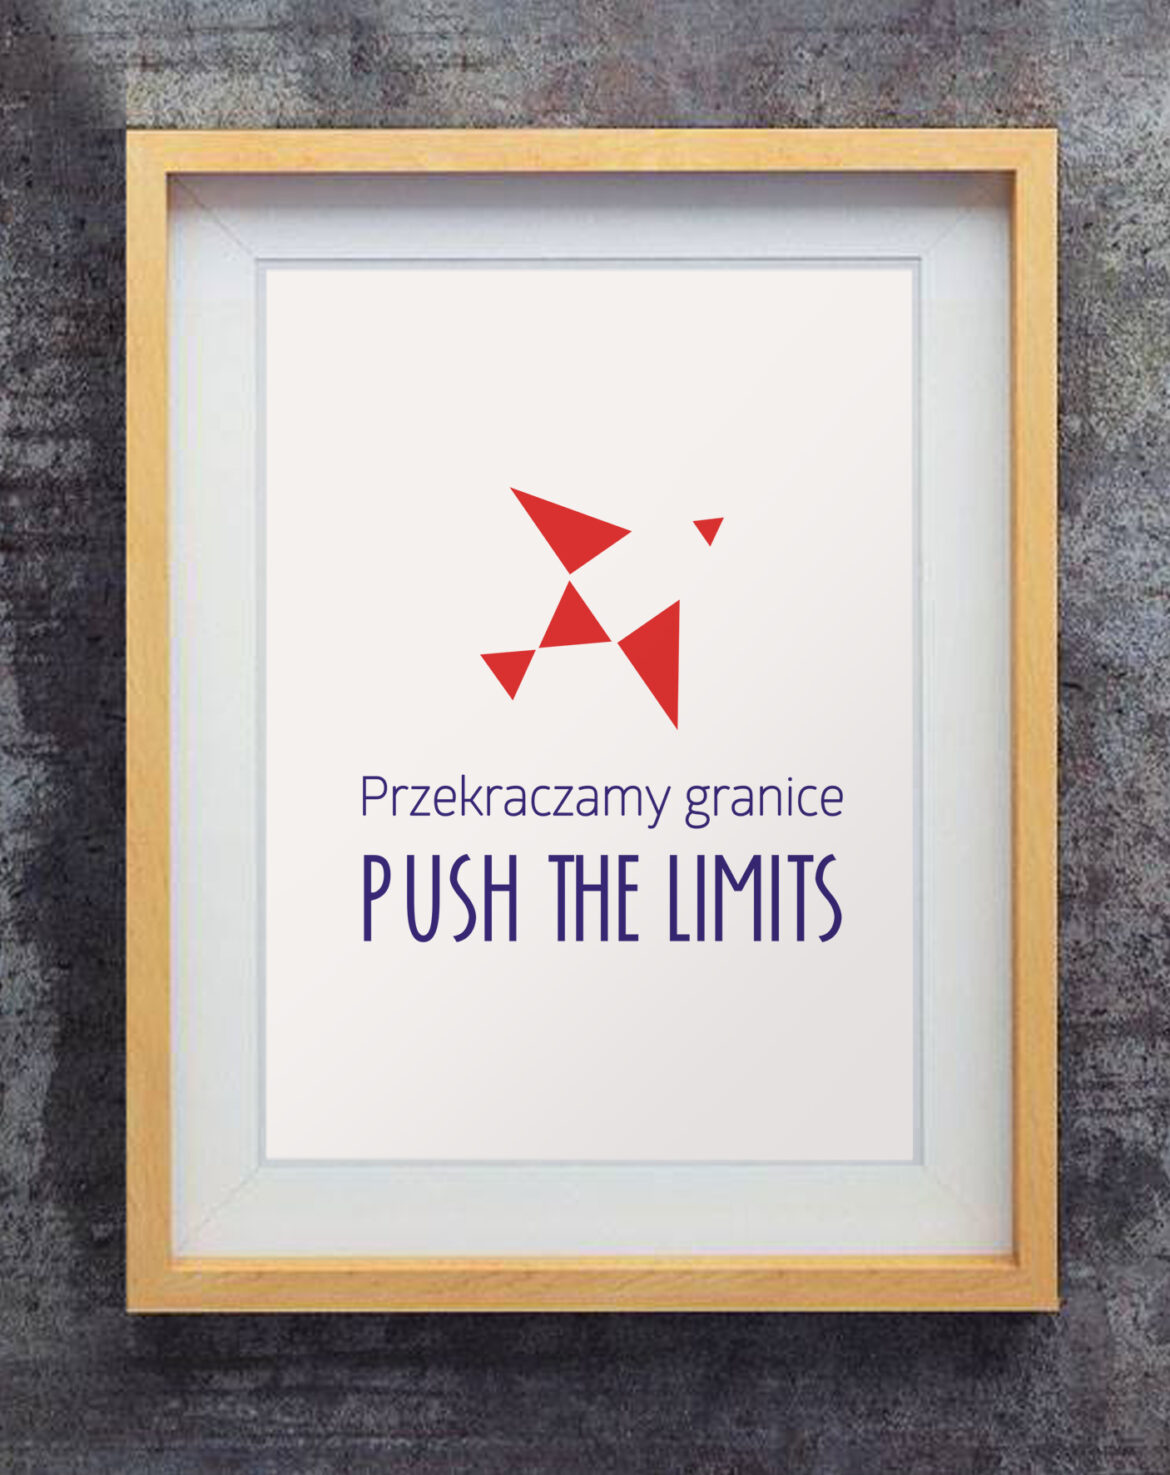 PLinEU | Przekraczamy granice. Push the limits